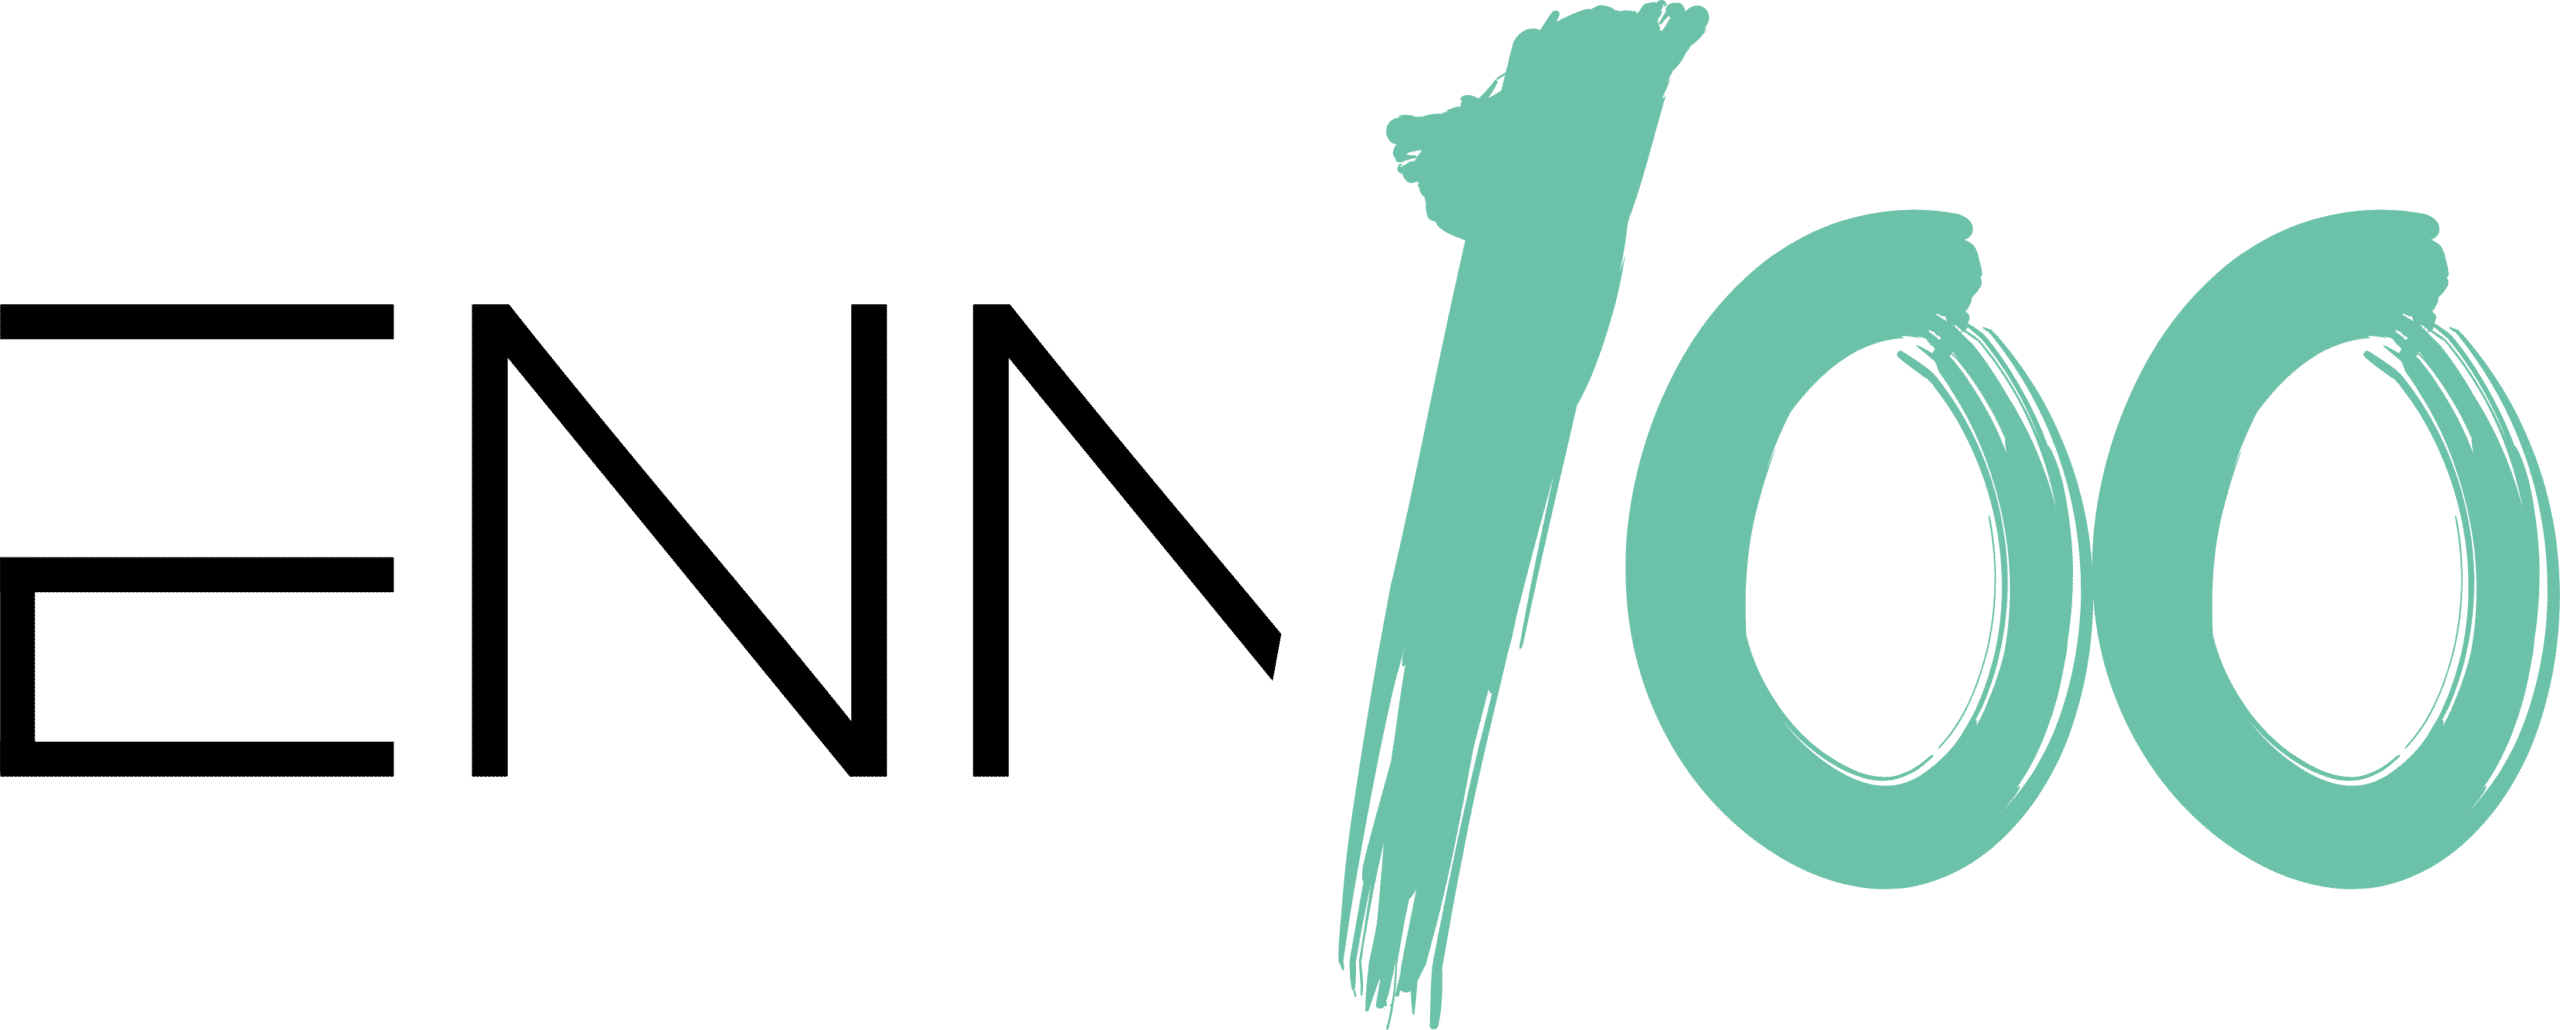 enn100-logo-final